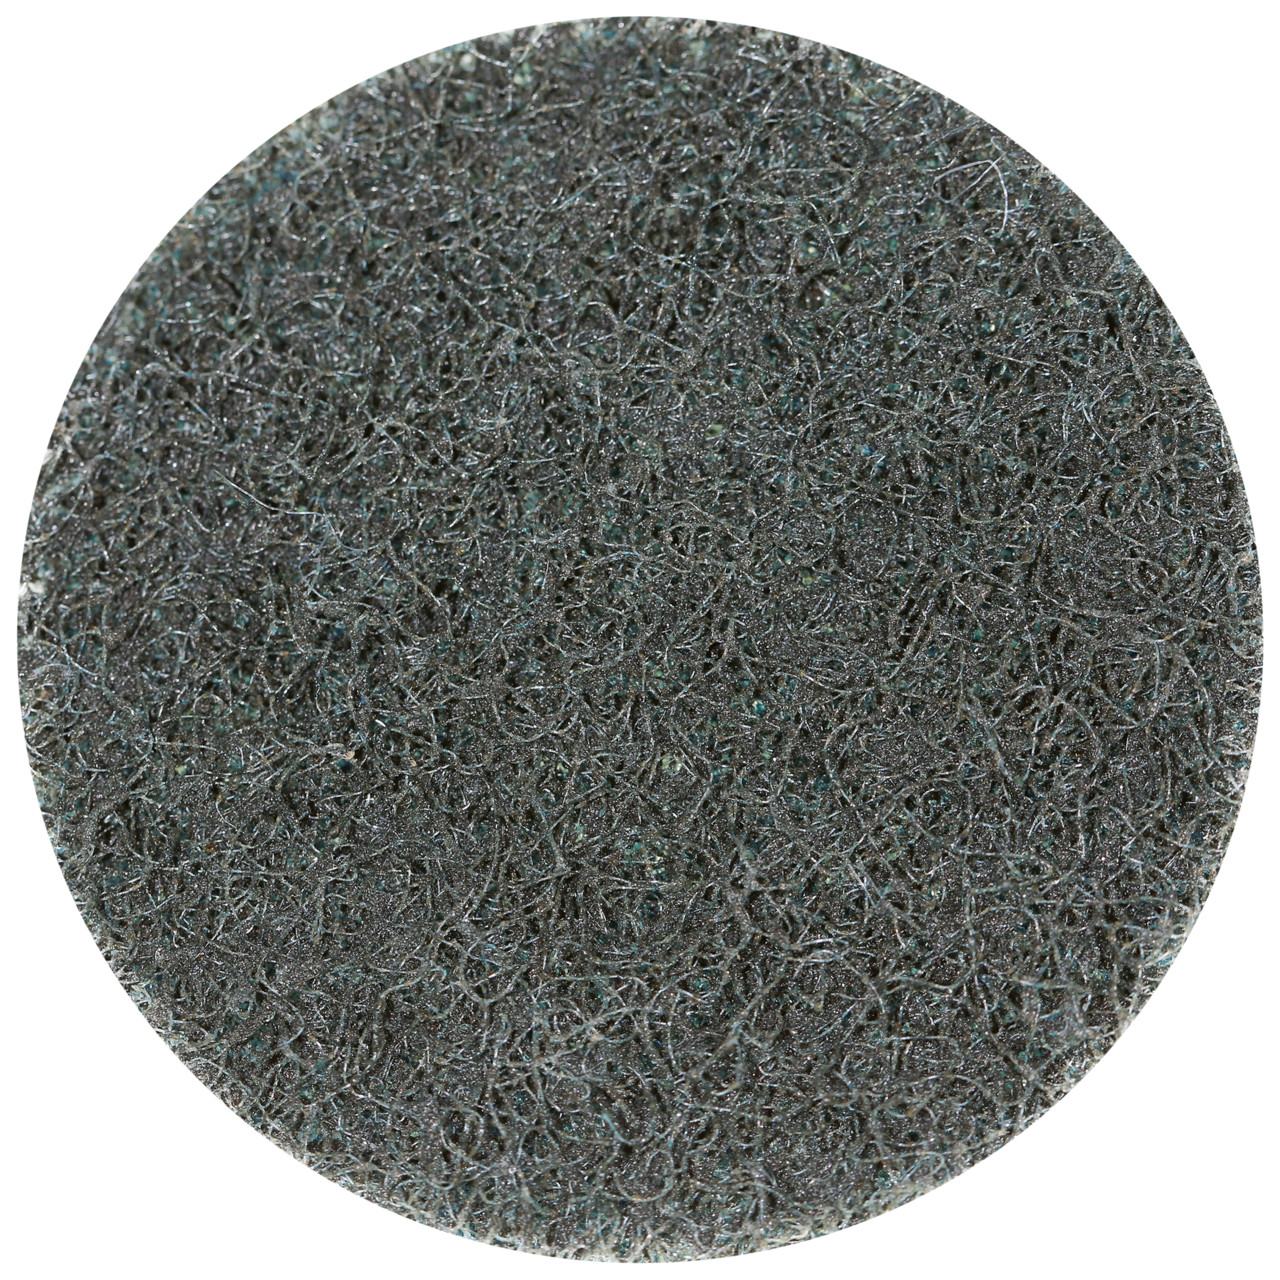 Tyrolit SCM QUICK CHANGE DISC Dimensione 75xR Per acciaio, acciaio inox, metalli non ferrosi, plastica e legno, MOLTO FINE, forma: QDISC, Art. 112588